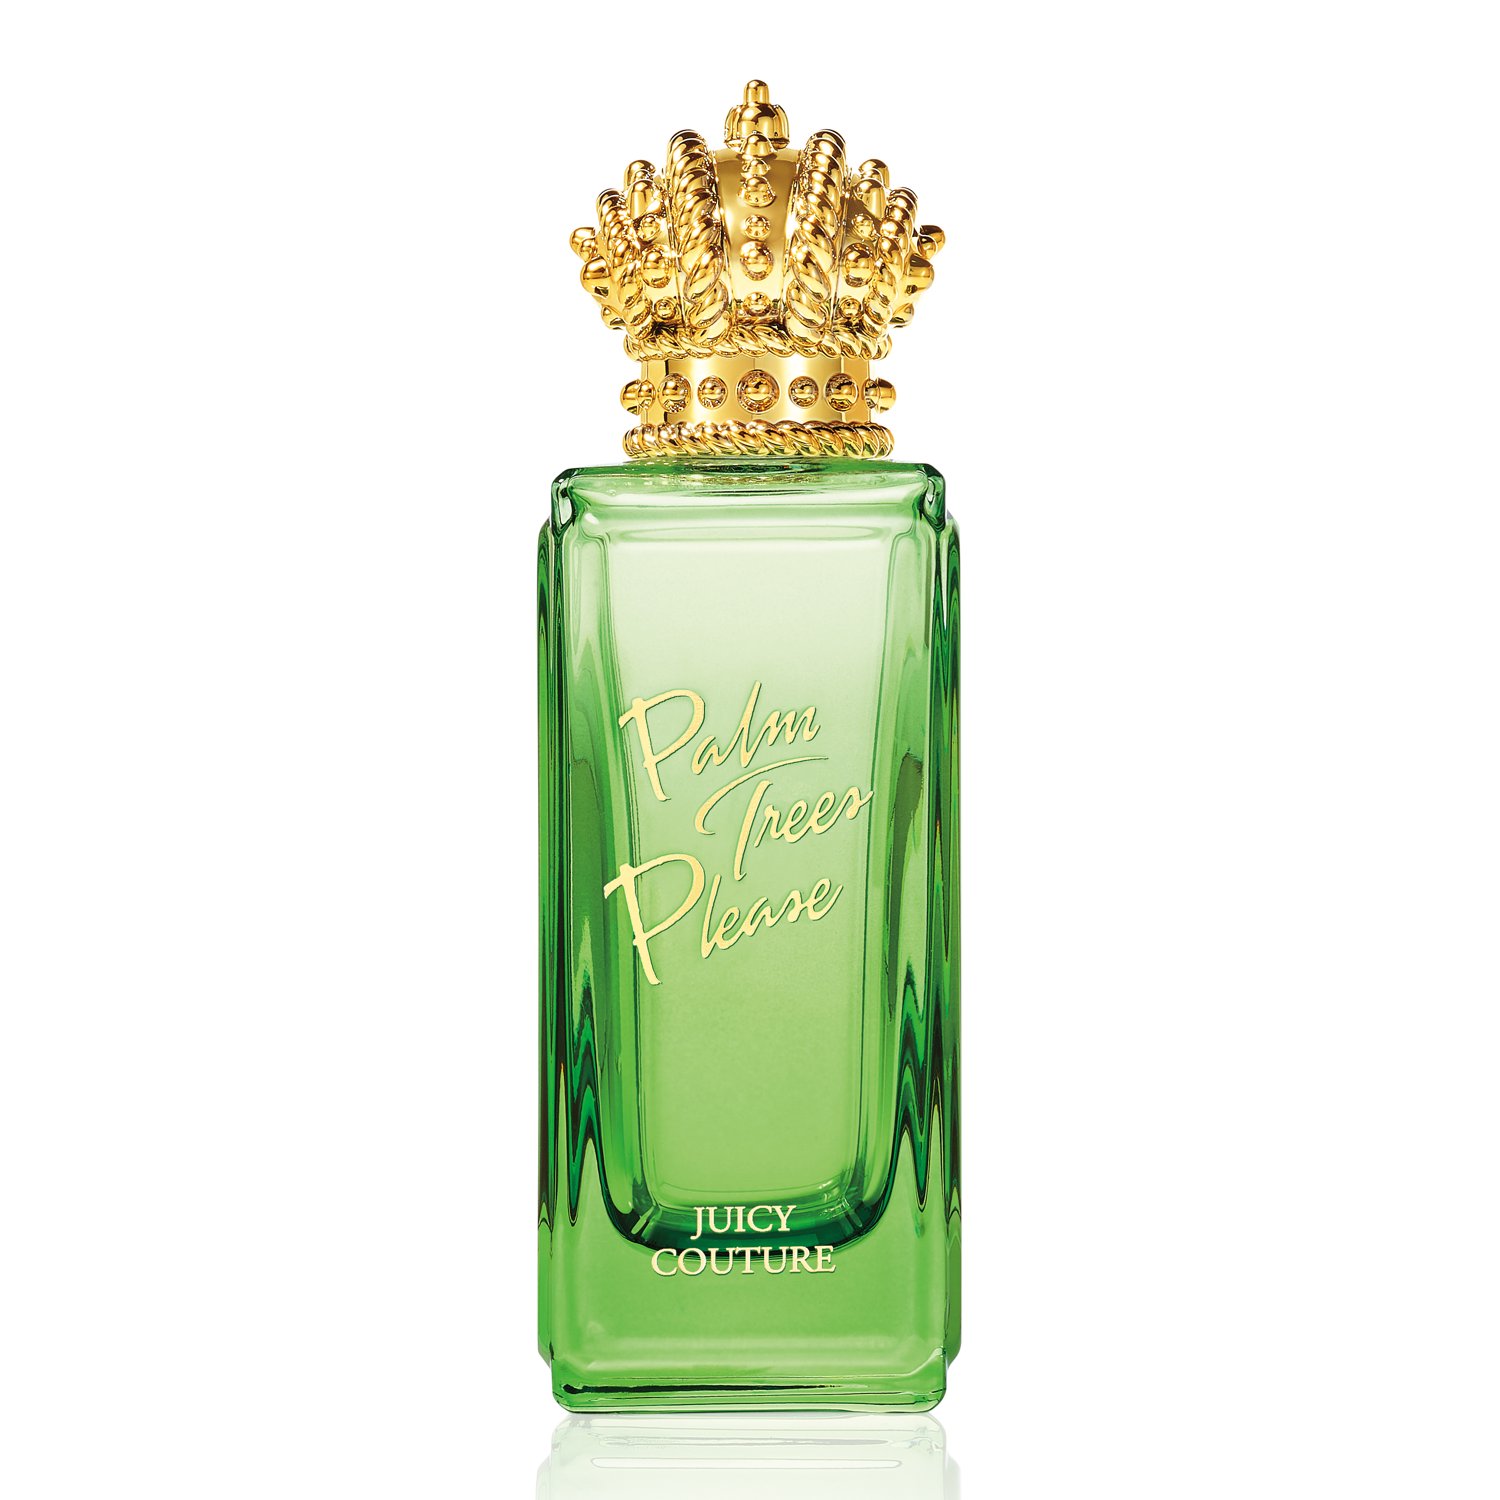 Juicy Couture - Viva La Juicy Petals Please Eau de Parfum 1.7 oz ...